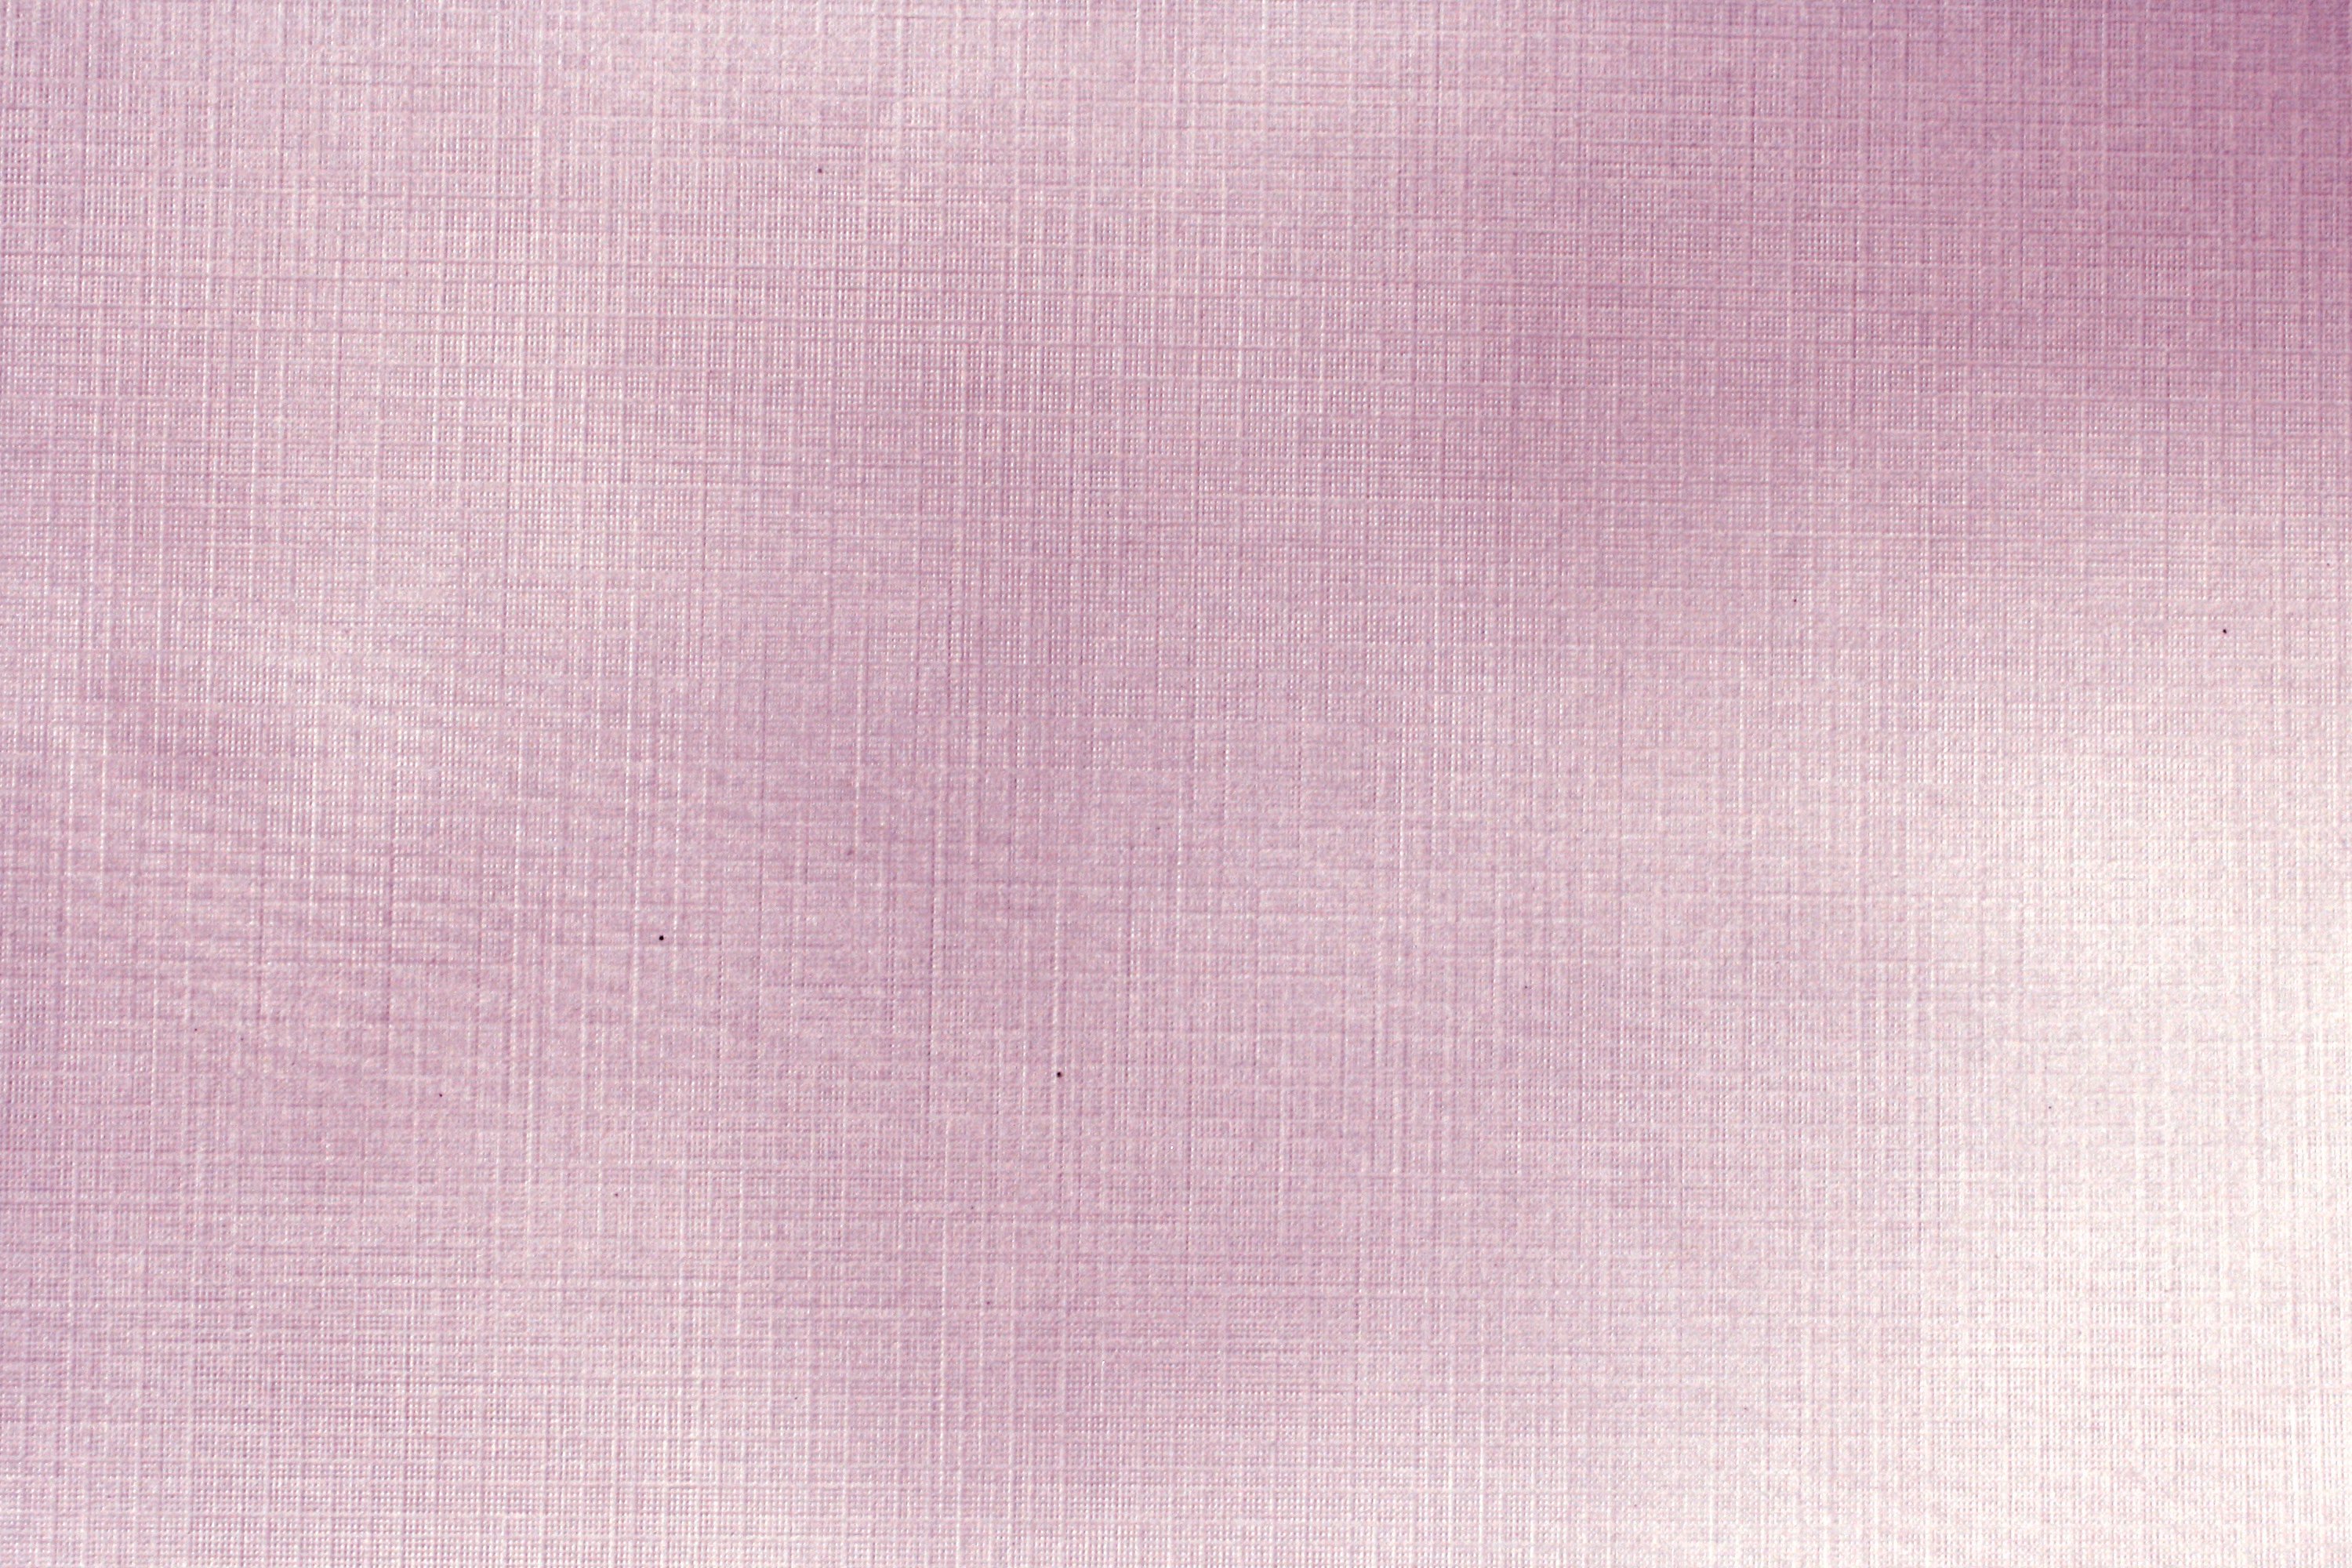 Mauve Linen Paper Texture Picture Photograph Photos Public